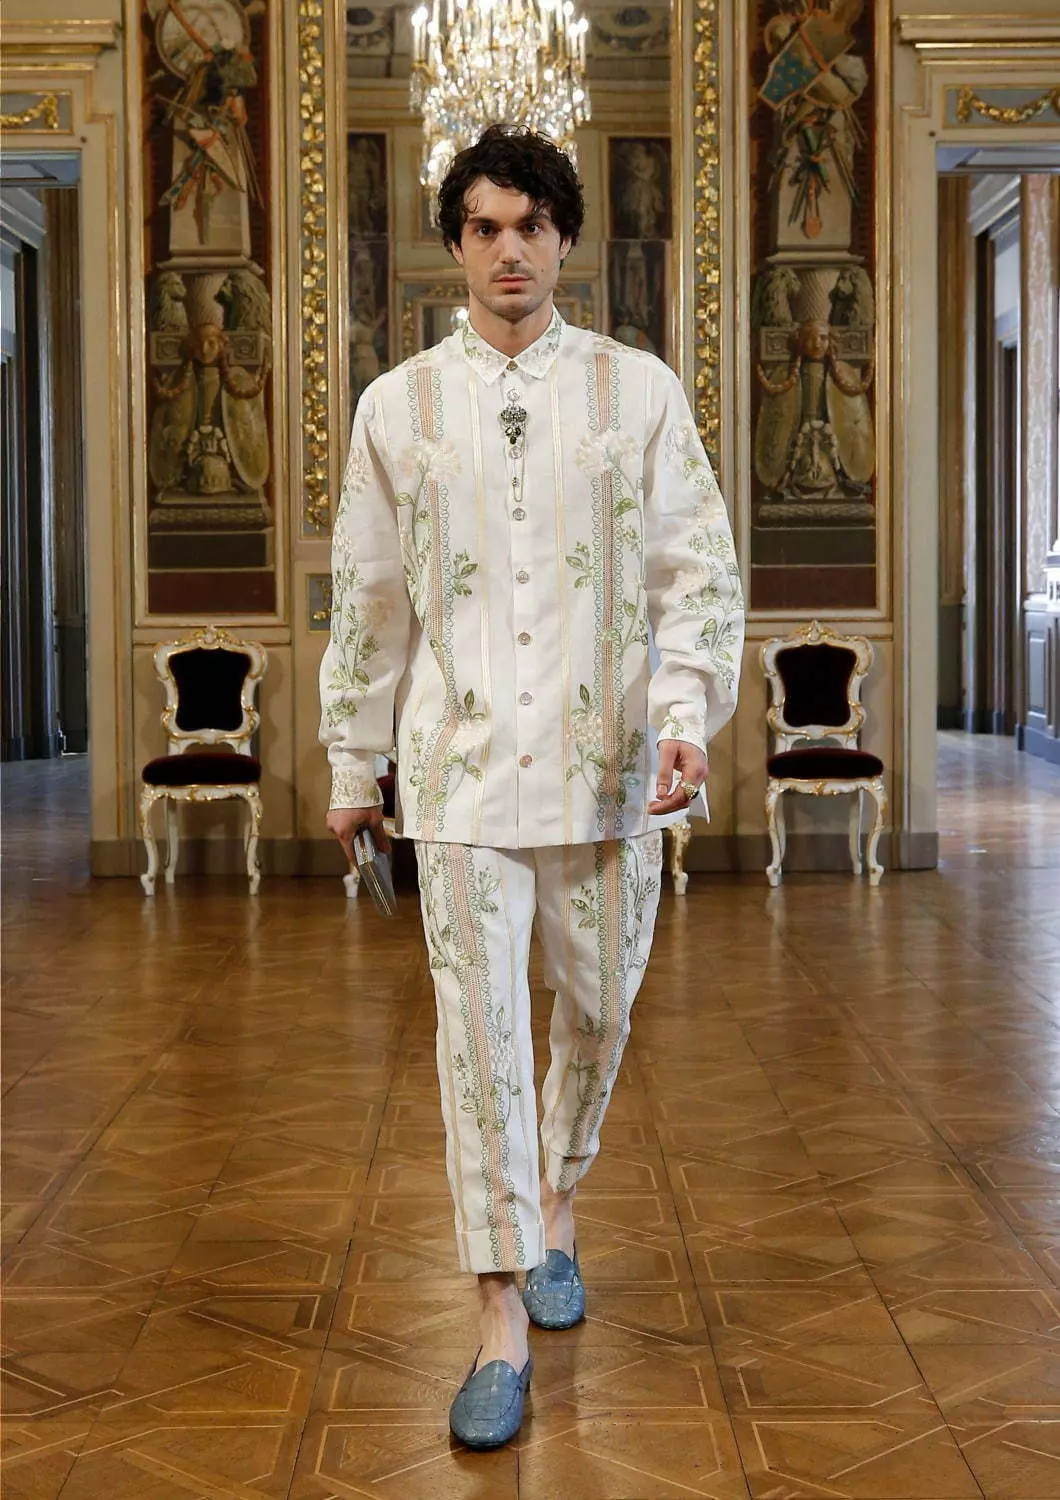 Colección Dolce & Gabbana Alta Sartoria Menswear Julio 2020 53602_58